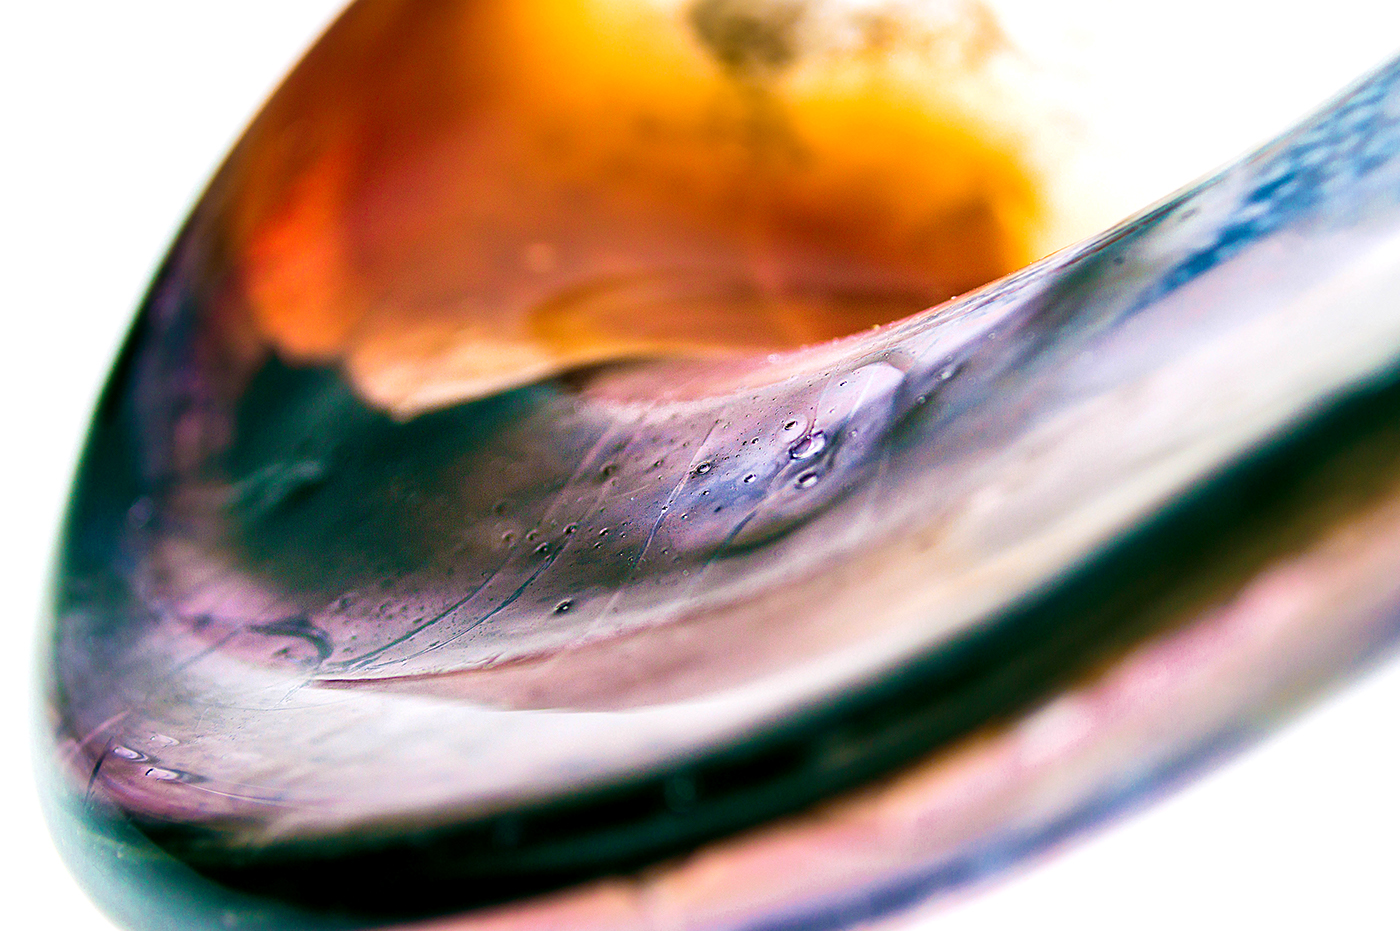 glass rondel blownglass sculpture glass blowing  coldwork hotglass texture experiment material